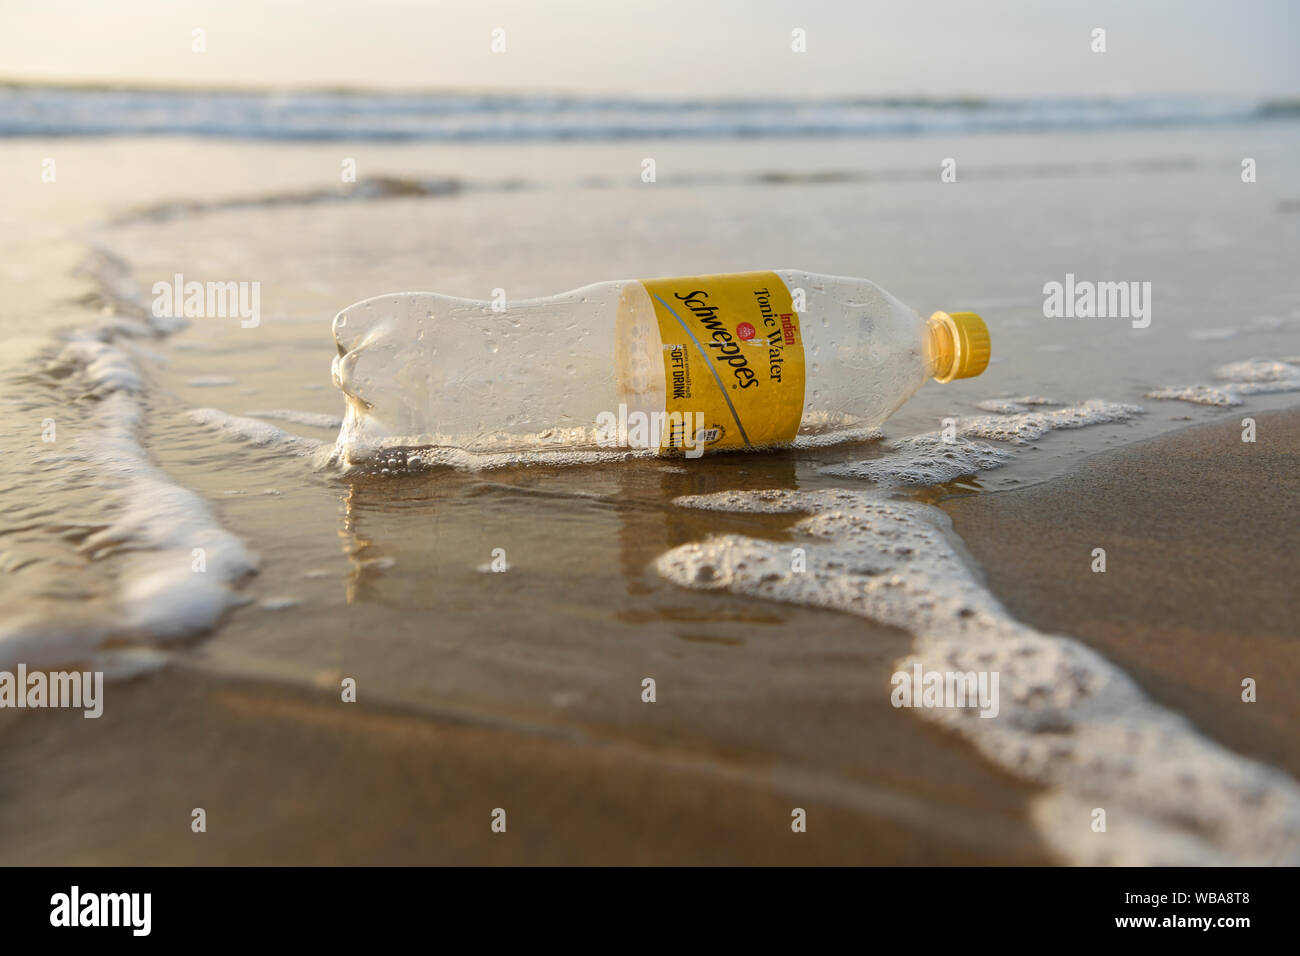 Durban, Südafrika, Kunststoff Umweltverschmutzung, einzelne Marke PET-Flasche an Strand, Lebensmittelverpackungen, Objekt, Nahaufnahme, Landschaft Stockfoto